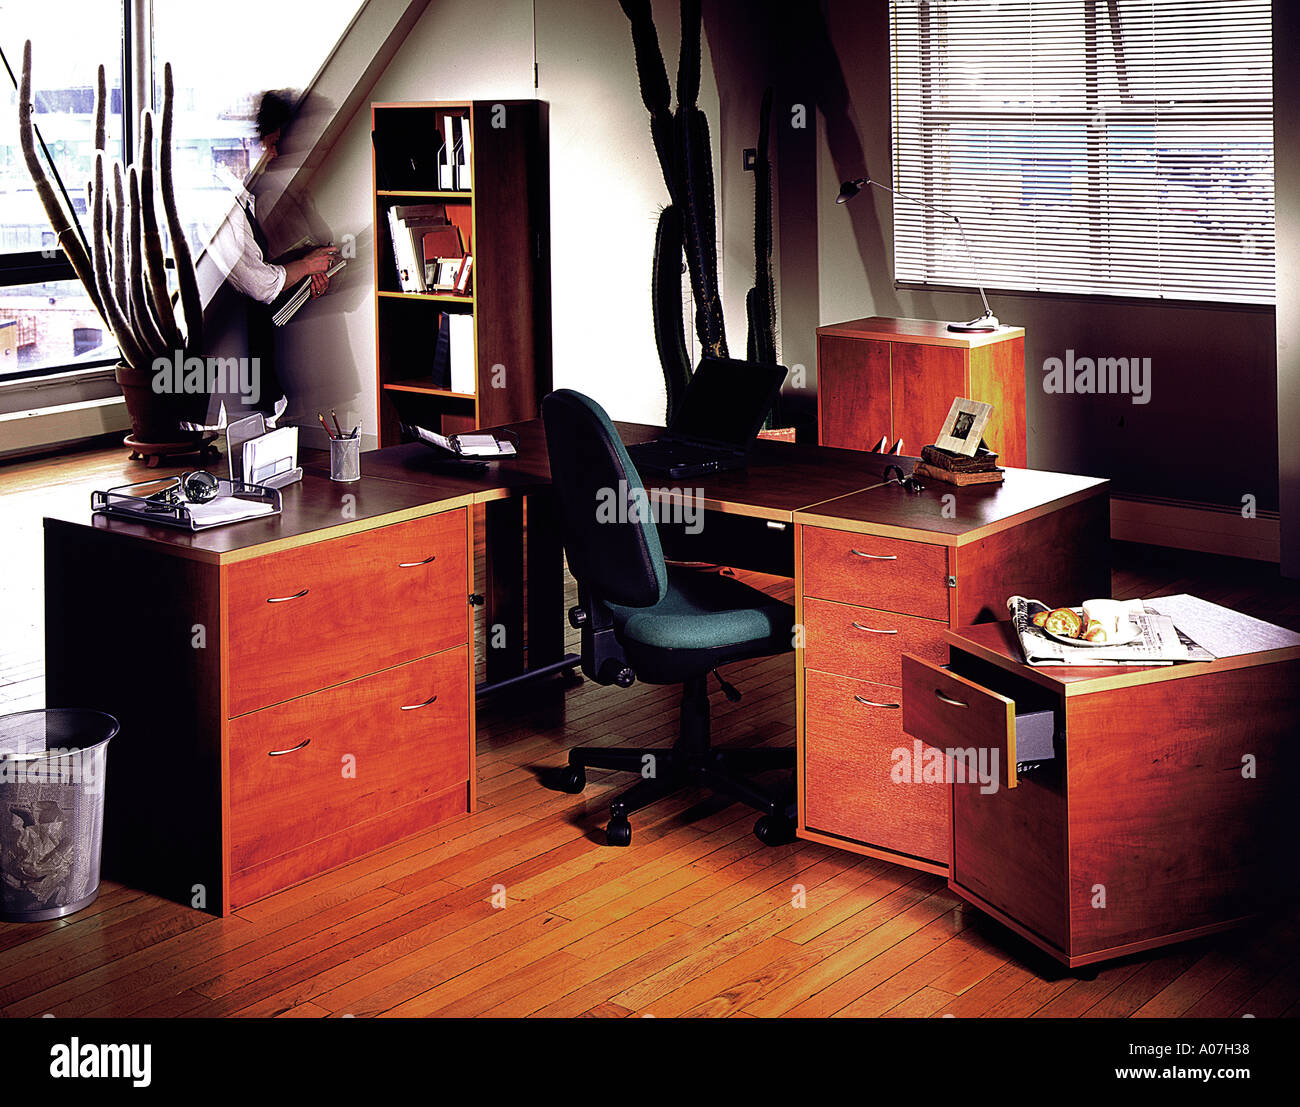 Stuhl, Schreibtisch, Teppich, Architektur, Business, Horizontal, im Haus, Büro, In einer Reihe, ordentlich, Tag, beleuchtet, Schaufenster-Innenräume, Stockfoto